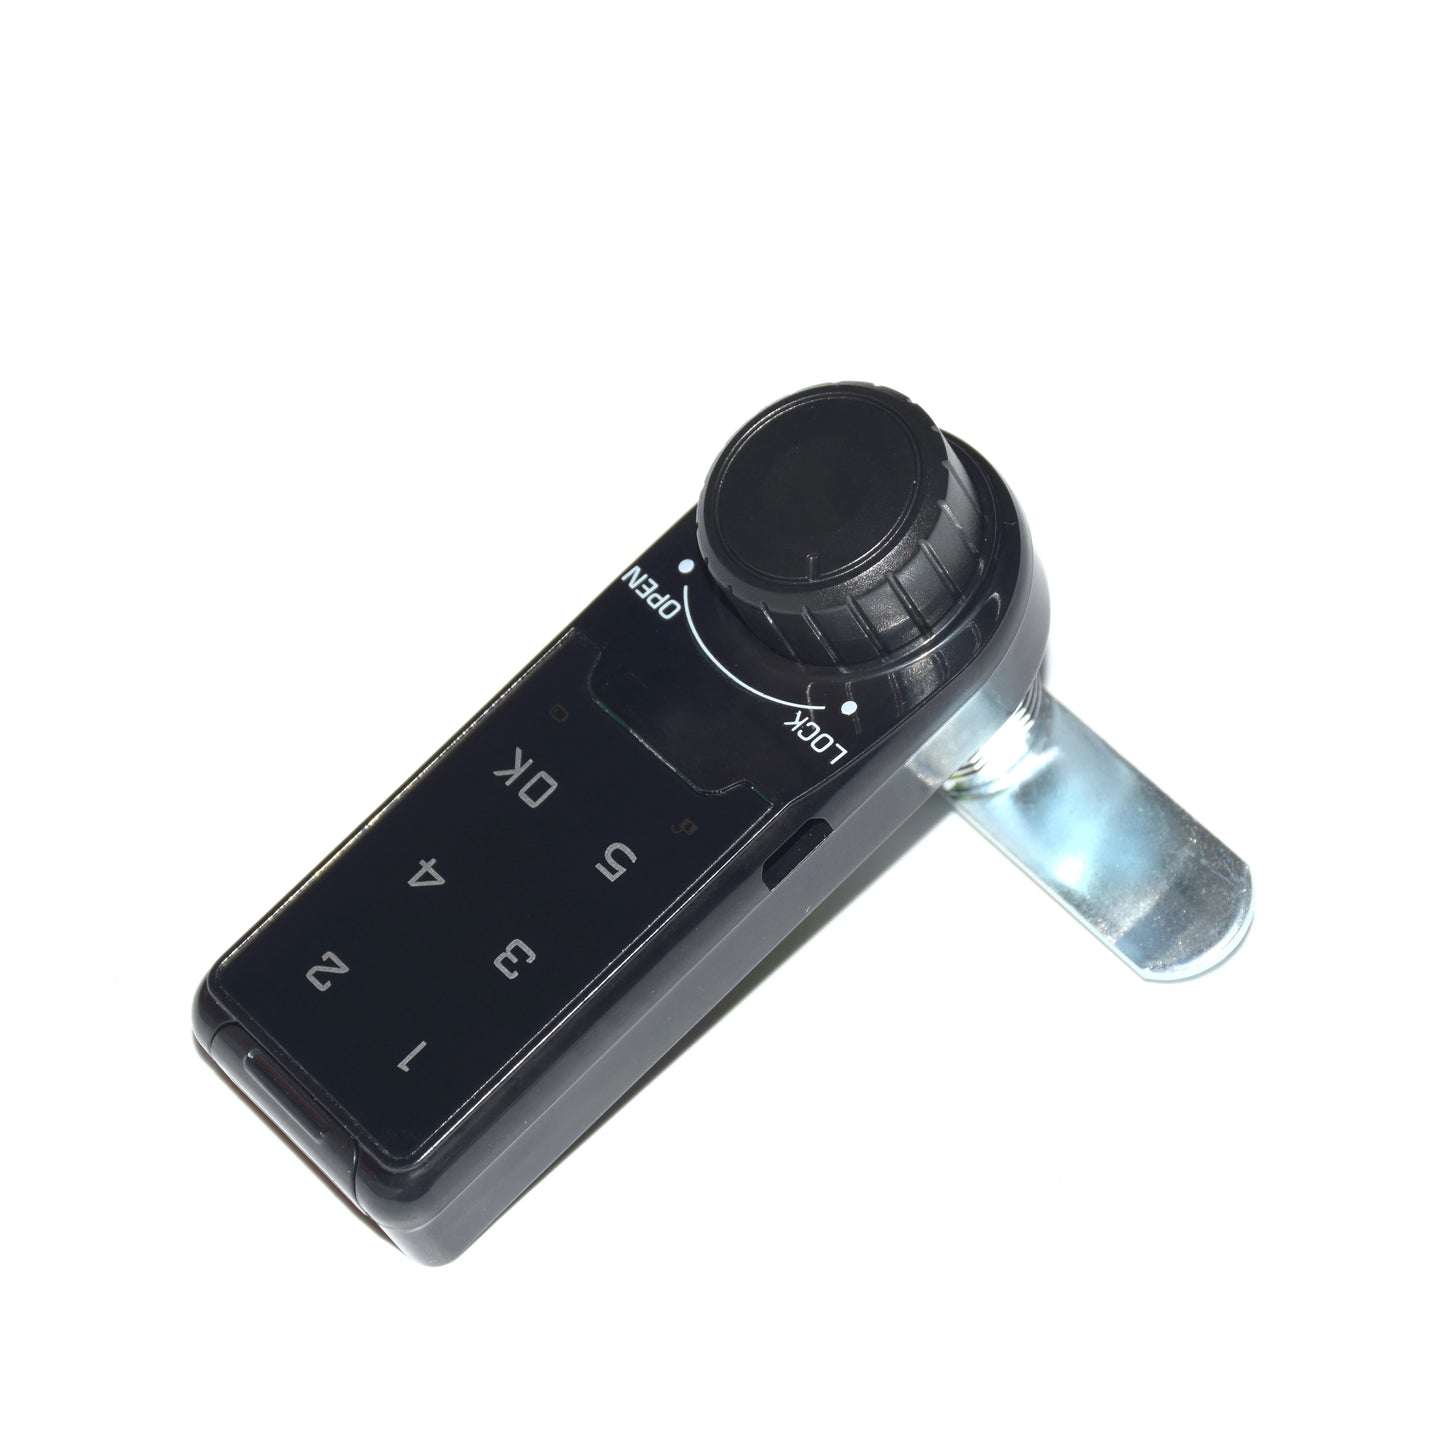 Smart Touch Keypad Door Lock